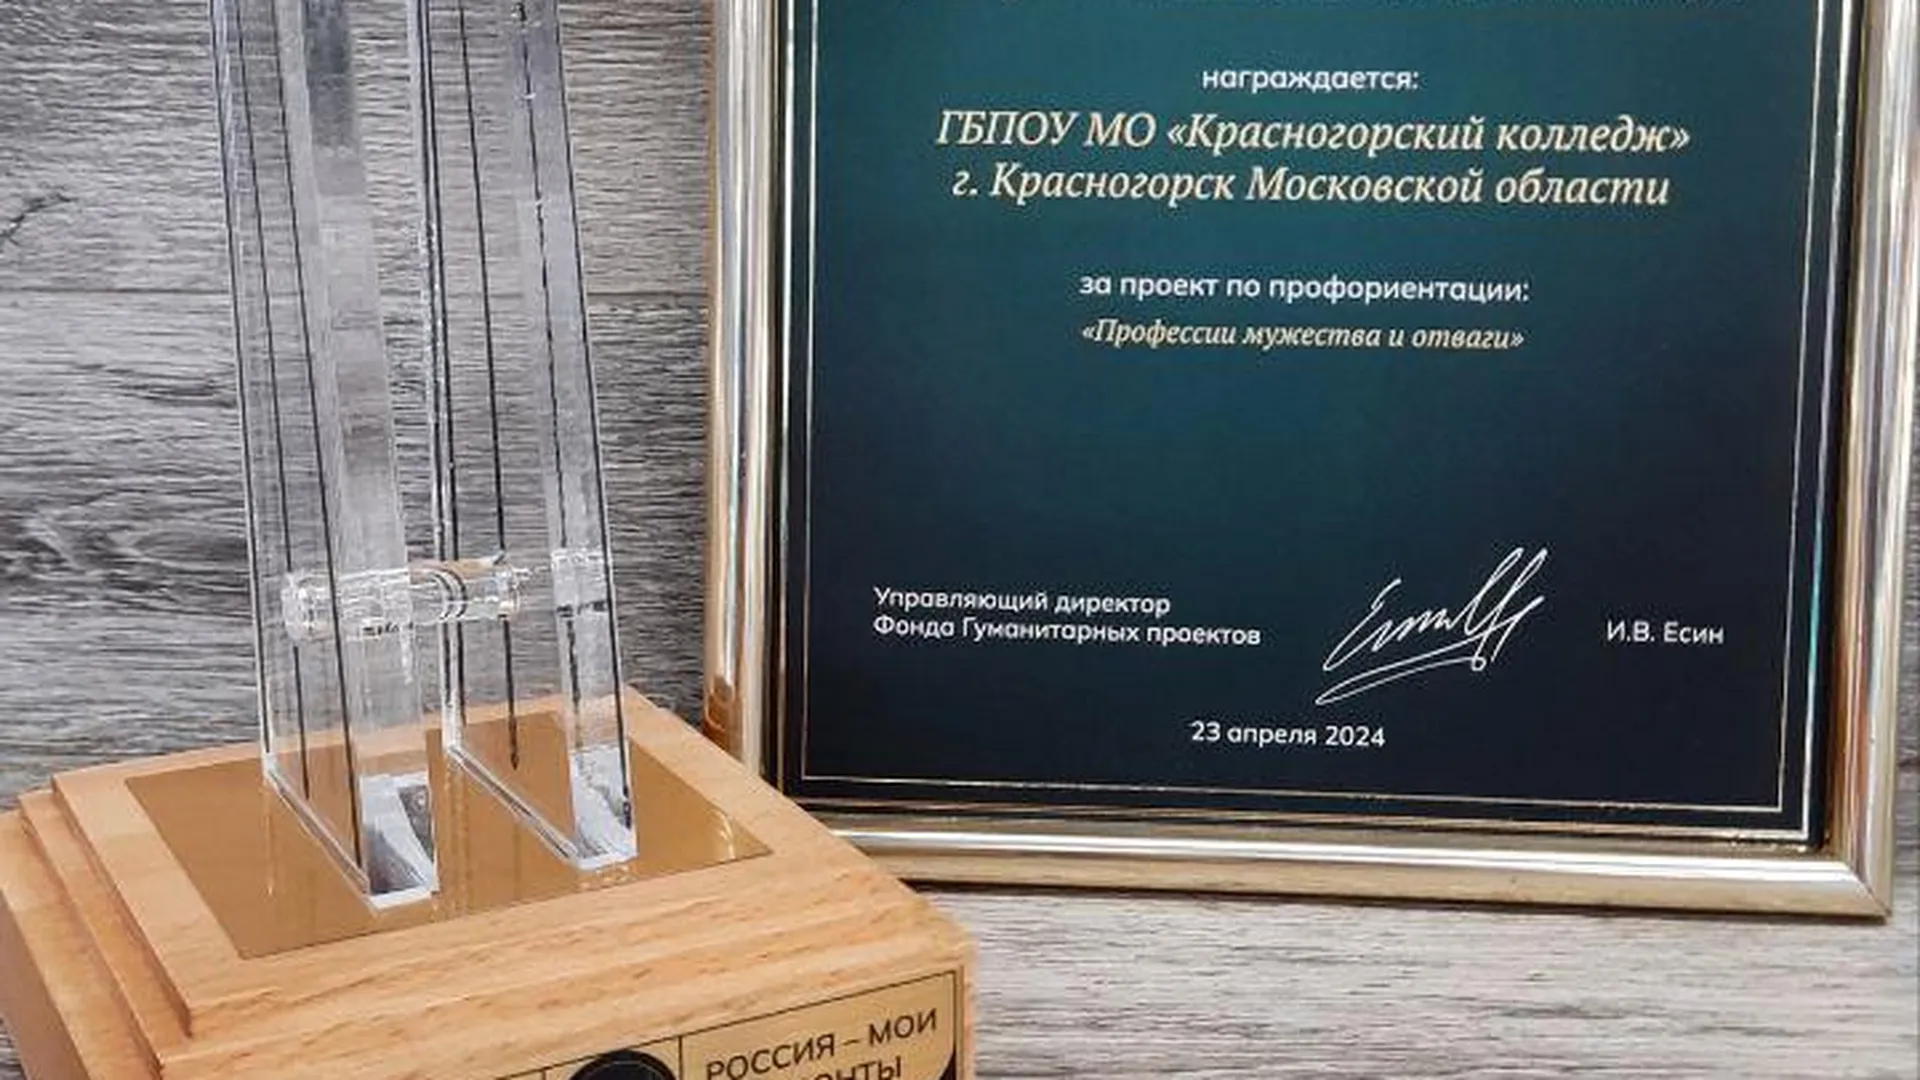 Колледж из Красногорска завоевал премию в сфере профориентации